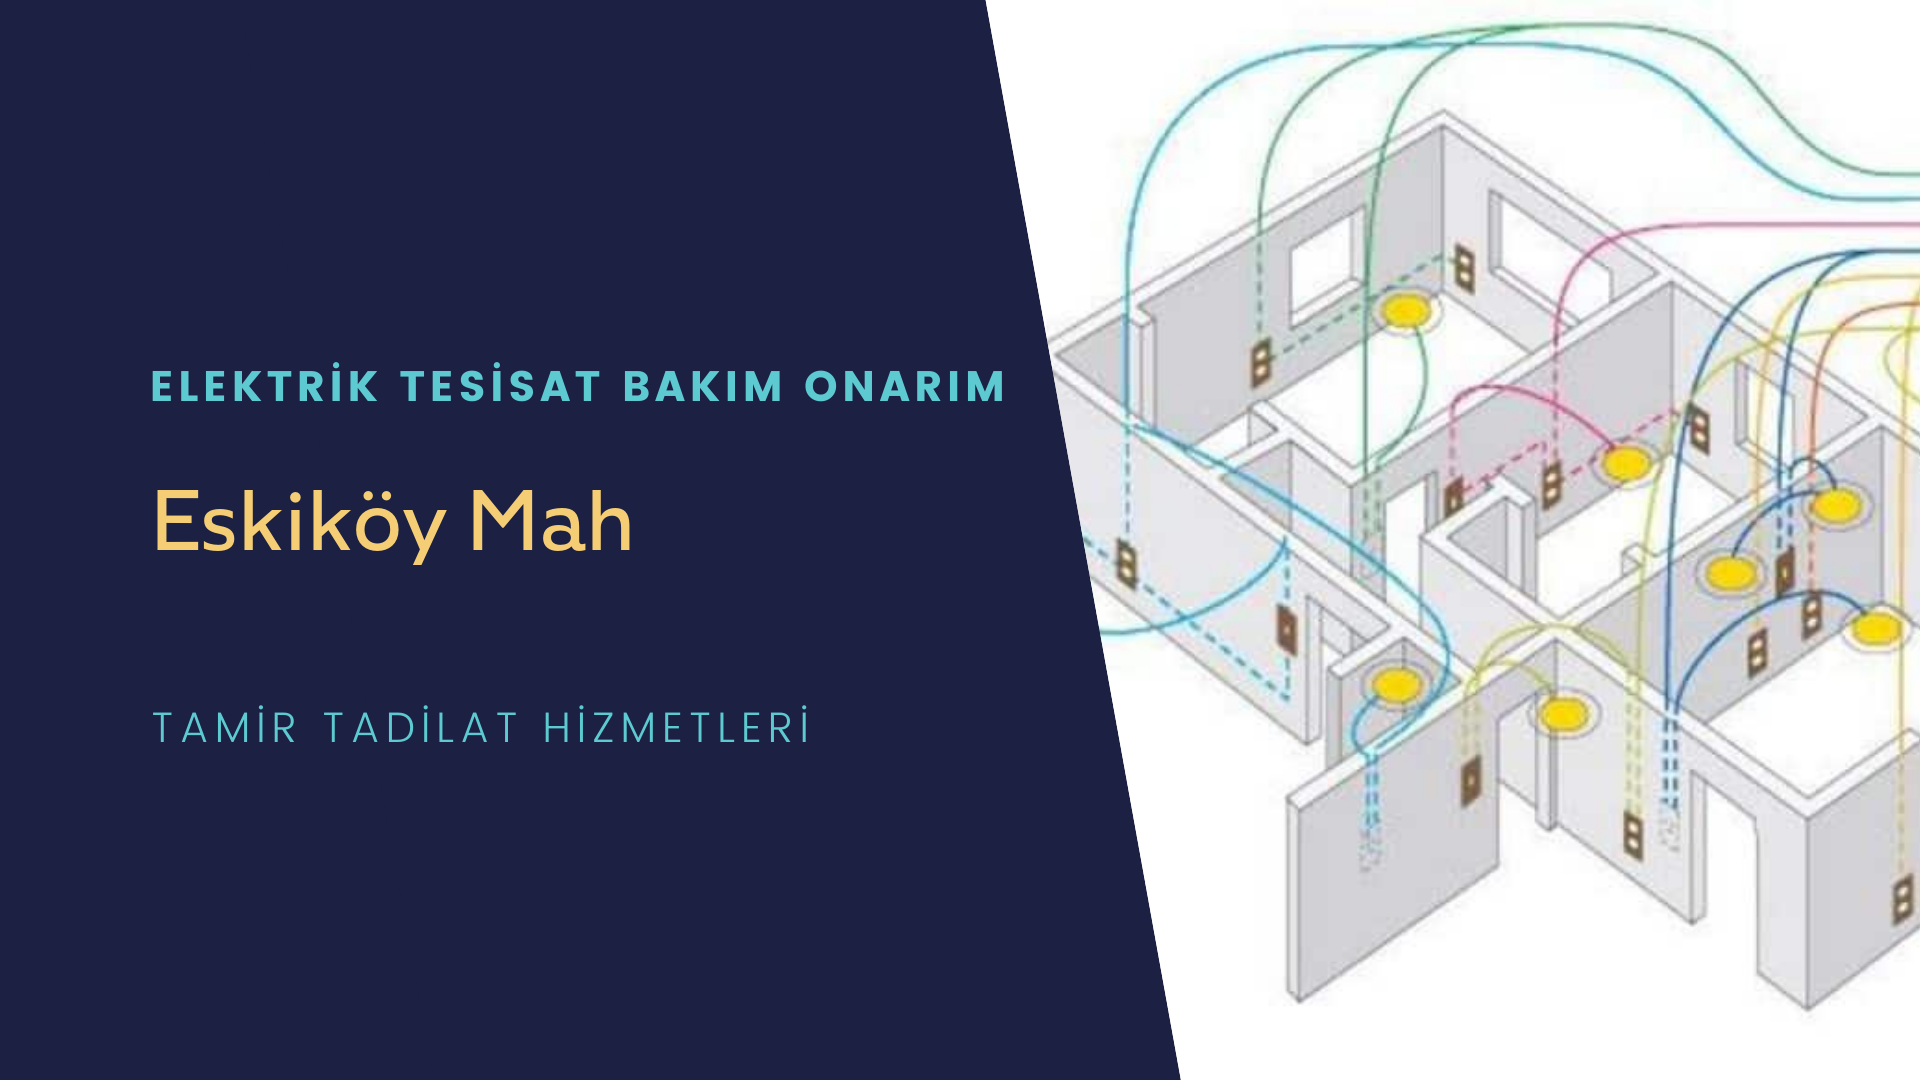 Eskiköy Mah  elektrik tesisatı ustalarımı arıyorsunuz doğru adrestenizi Eskiköy Mah elektrik tesisatı ustalarımız 7/24 sizlere hizmet vermekten mutluluk duyar.